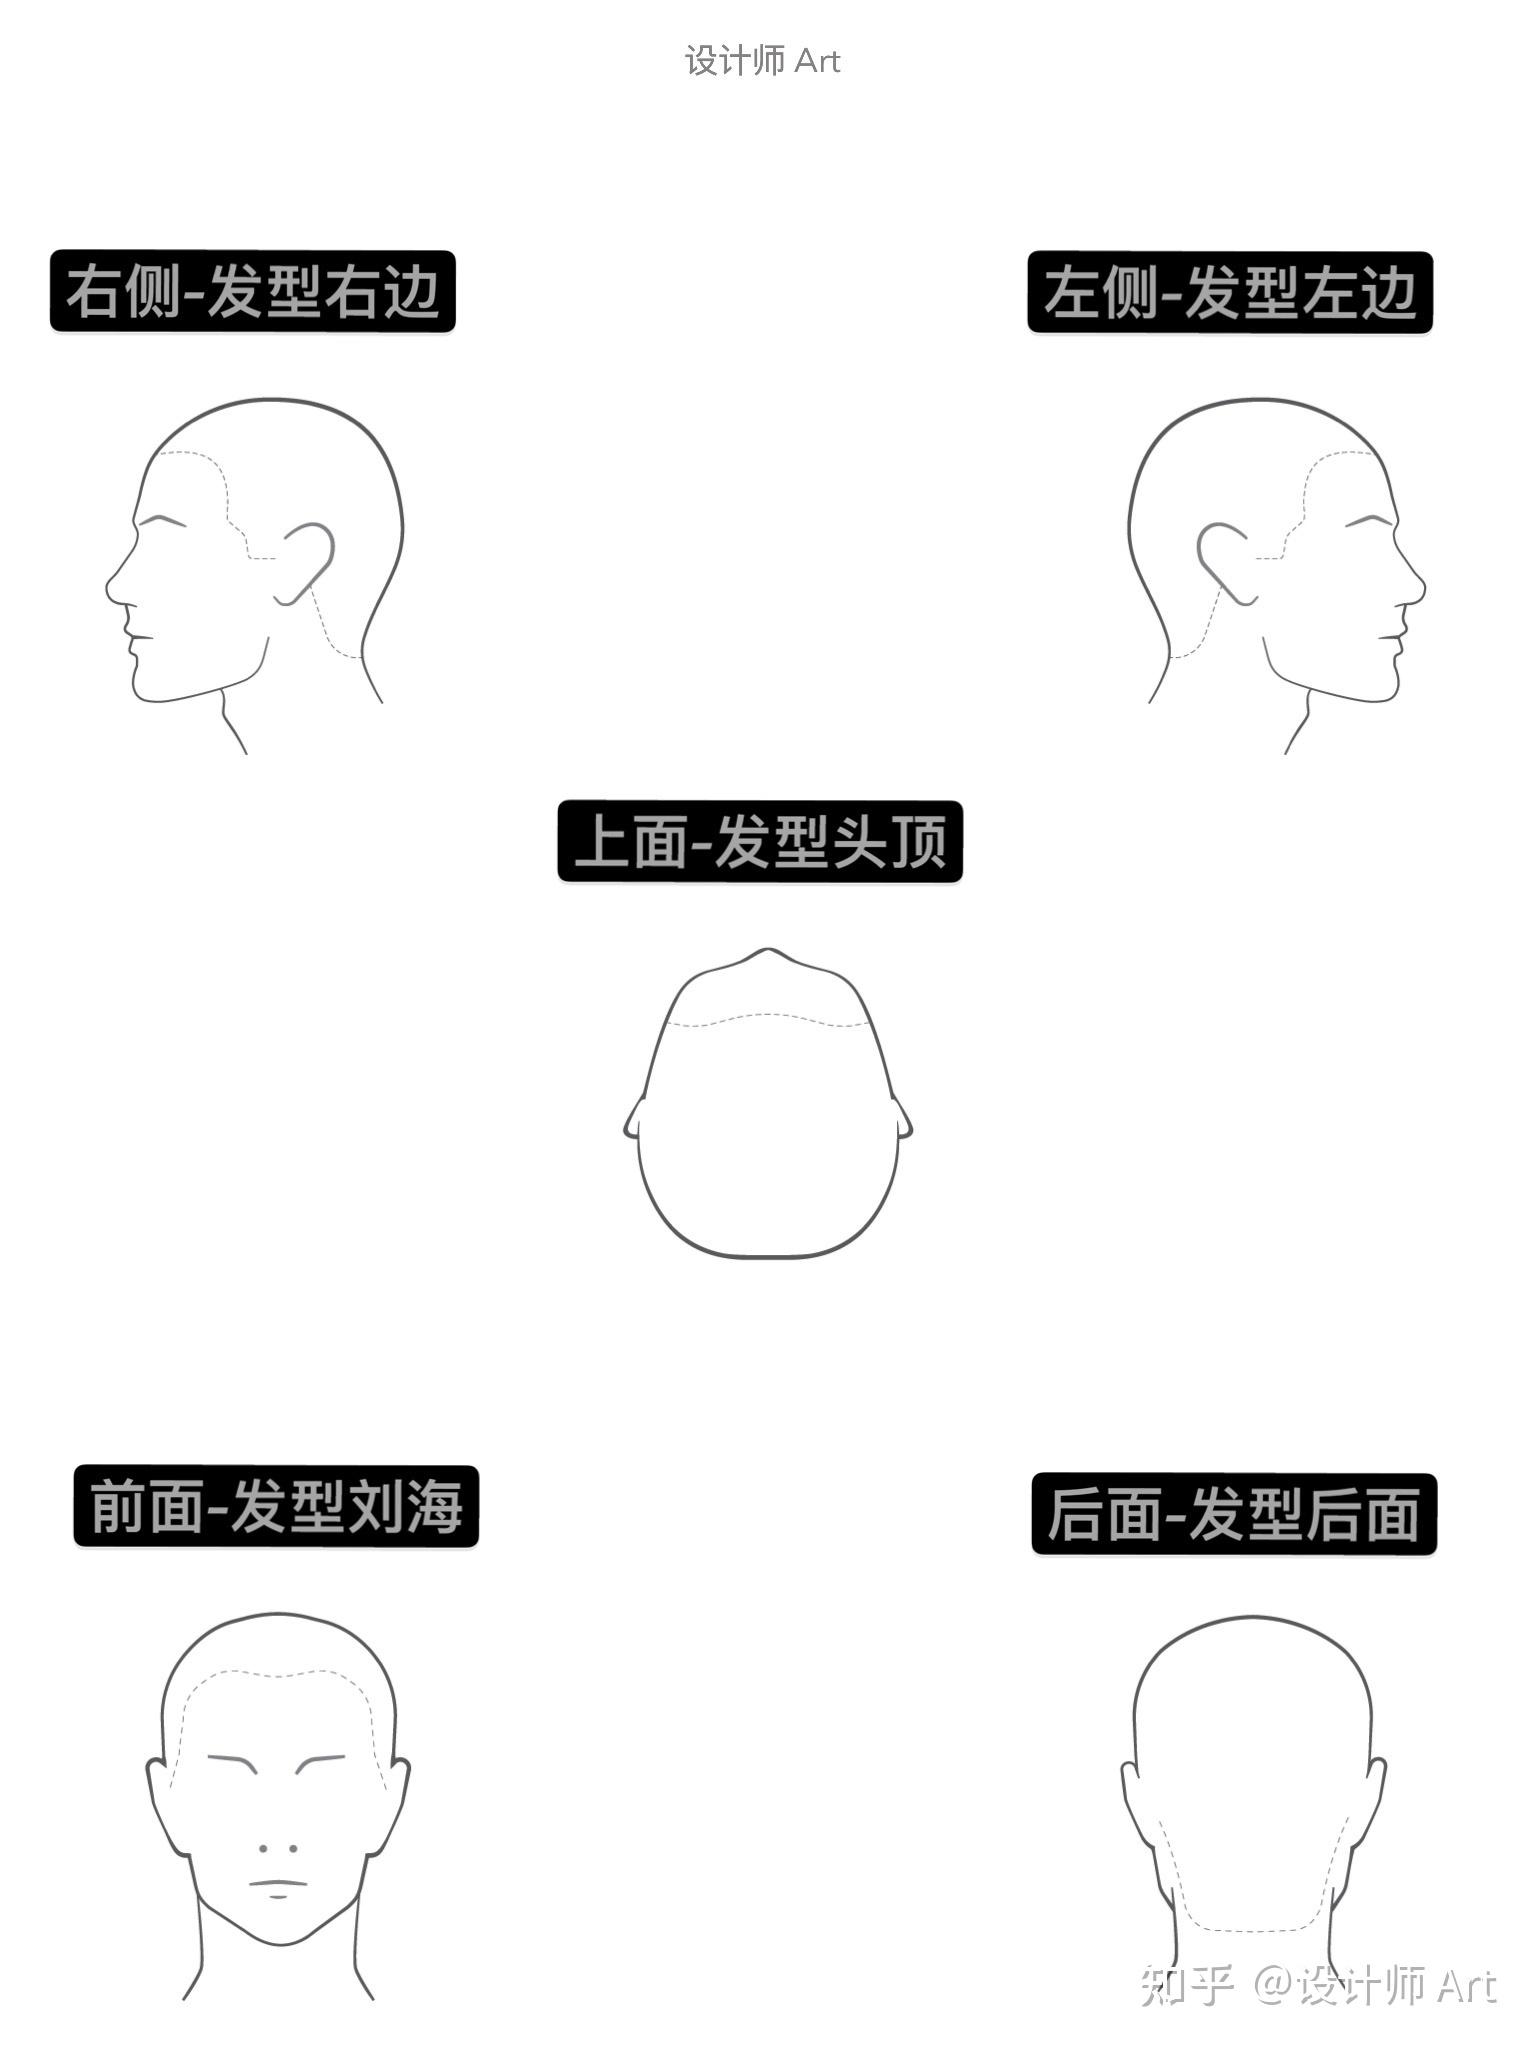 脸型结构示意图图片